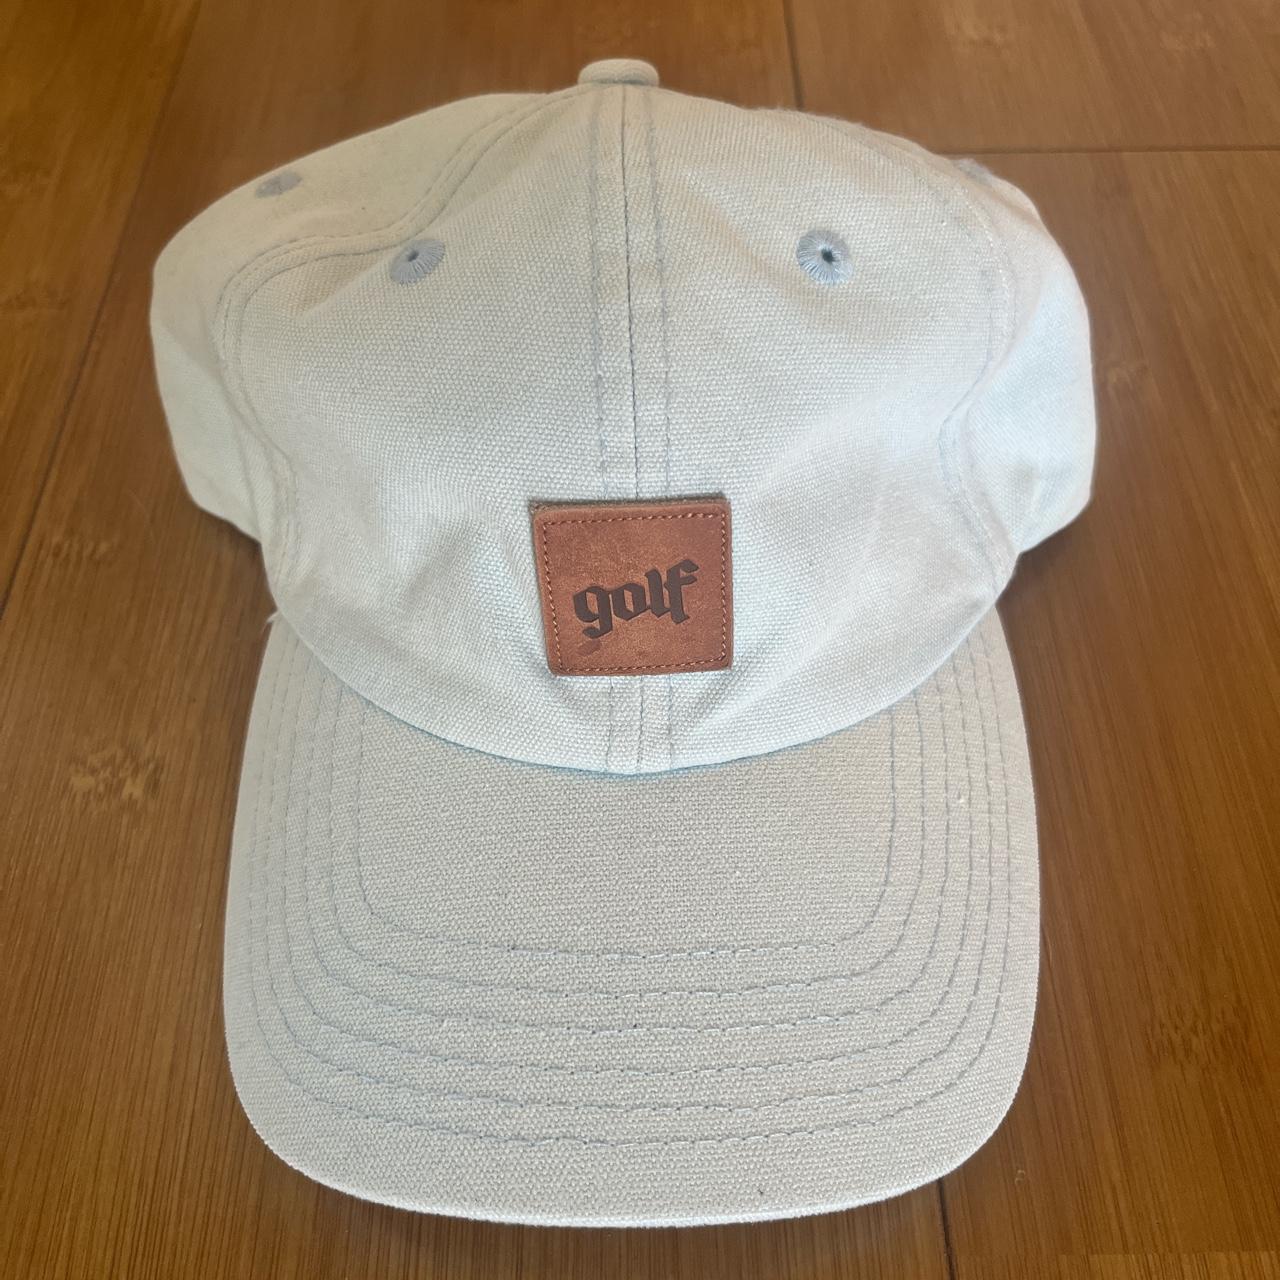 Golf Wang hat - light blue. 10/10 condition. - Depop